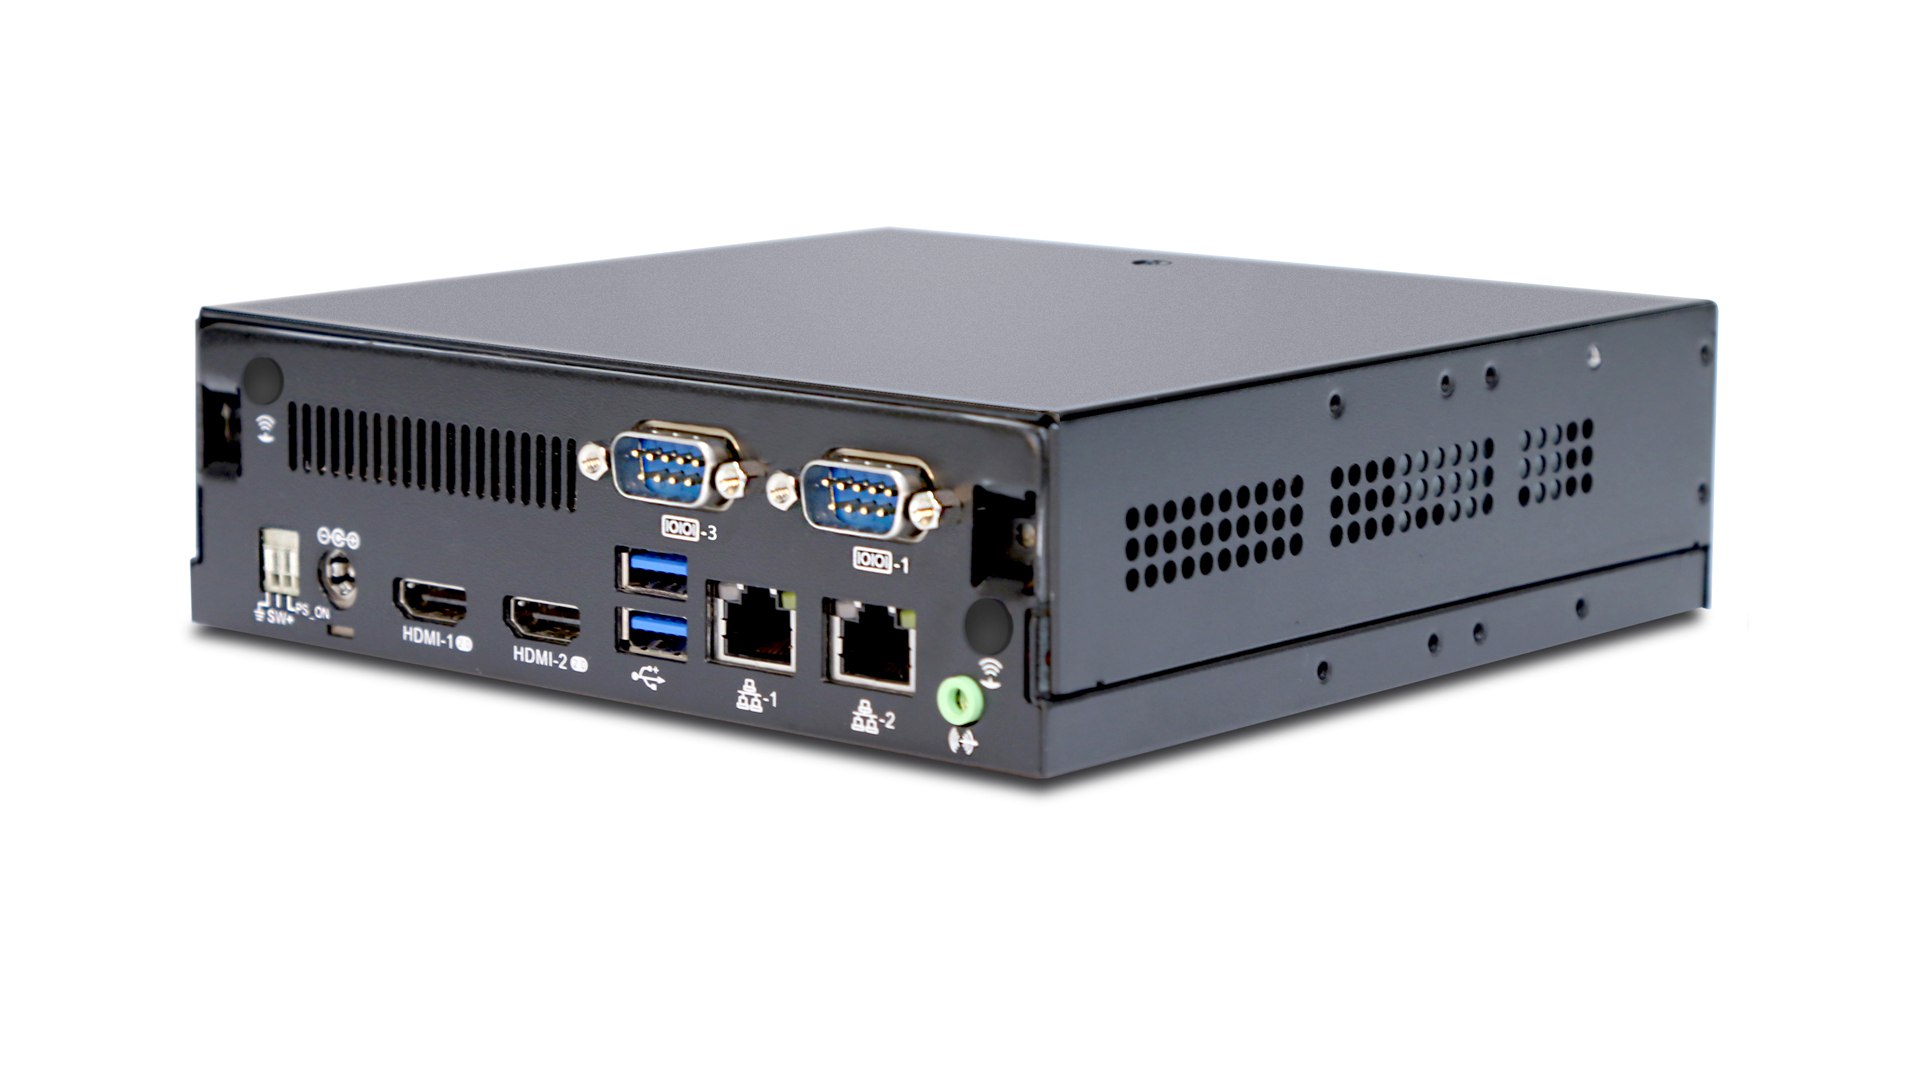 AOPEN DE5500 – SFF PC features 7th generation Intel® Core